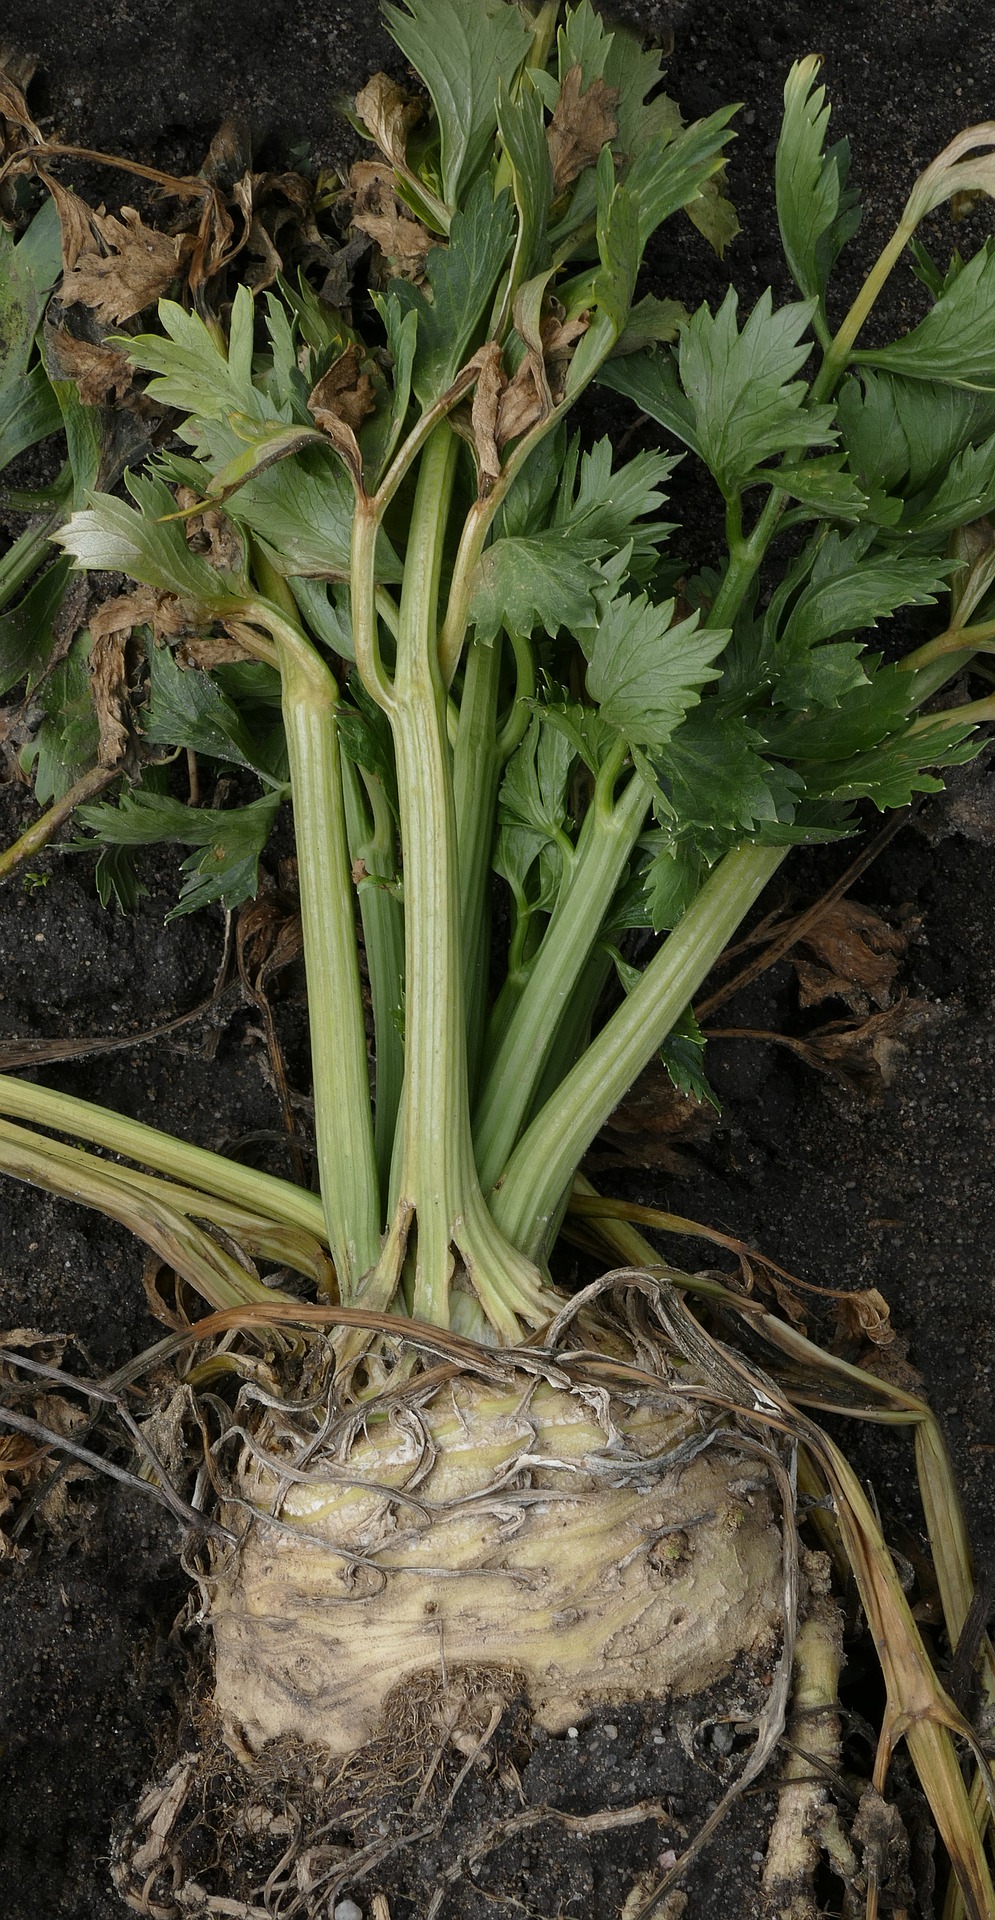 celery root